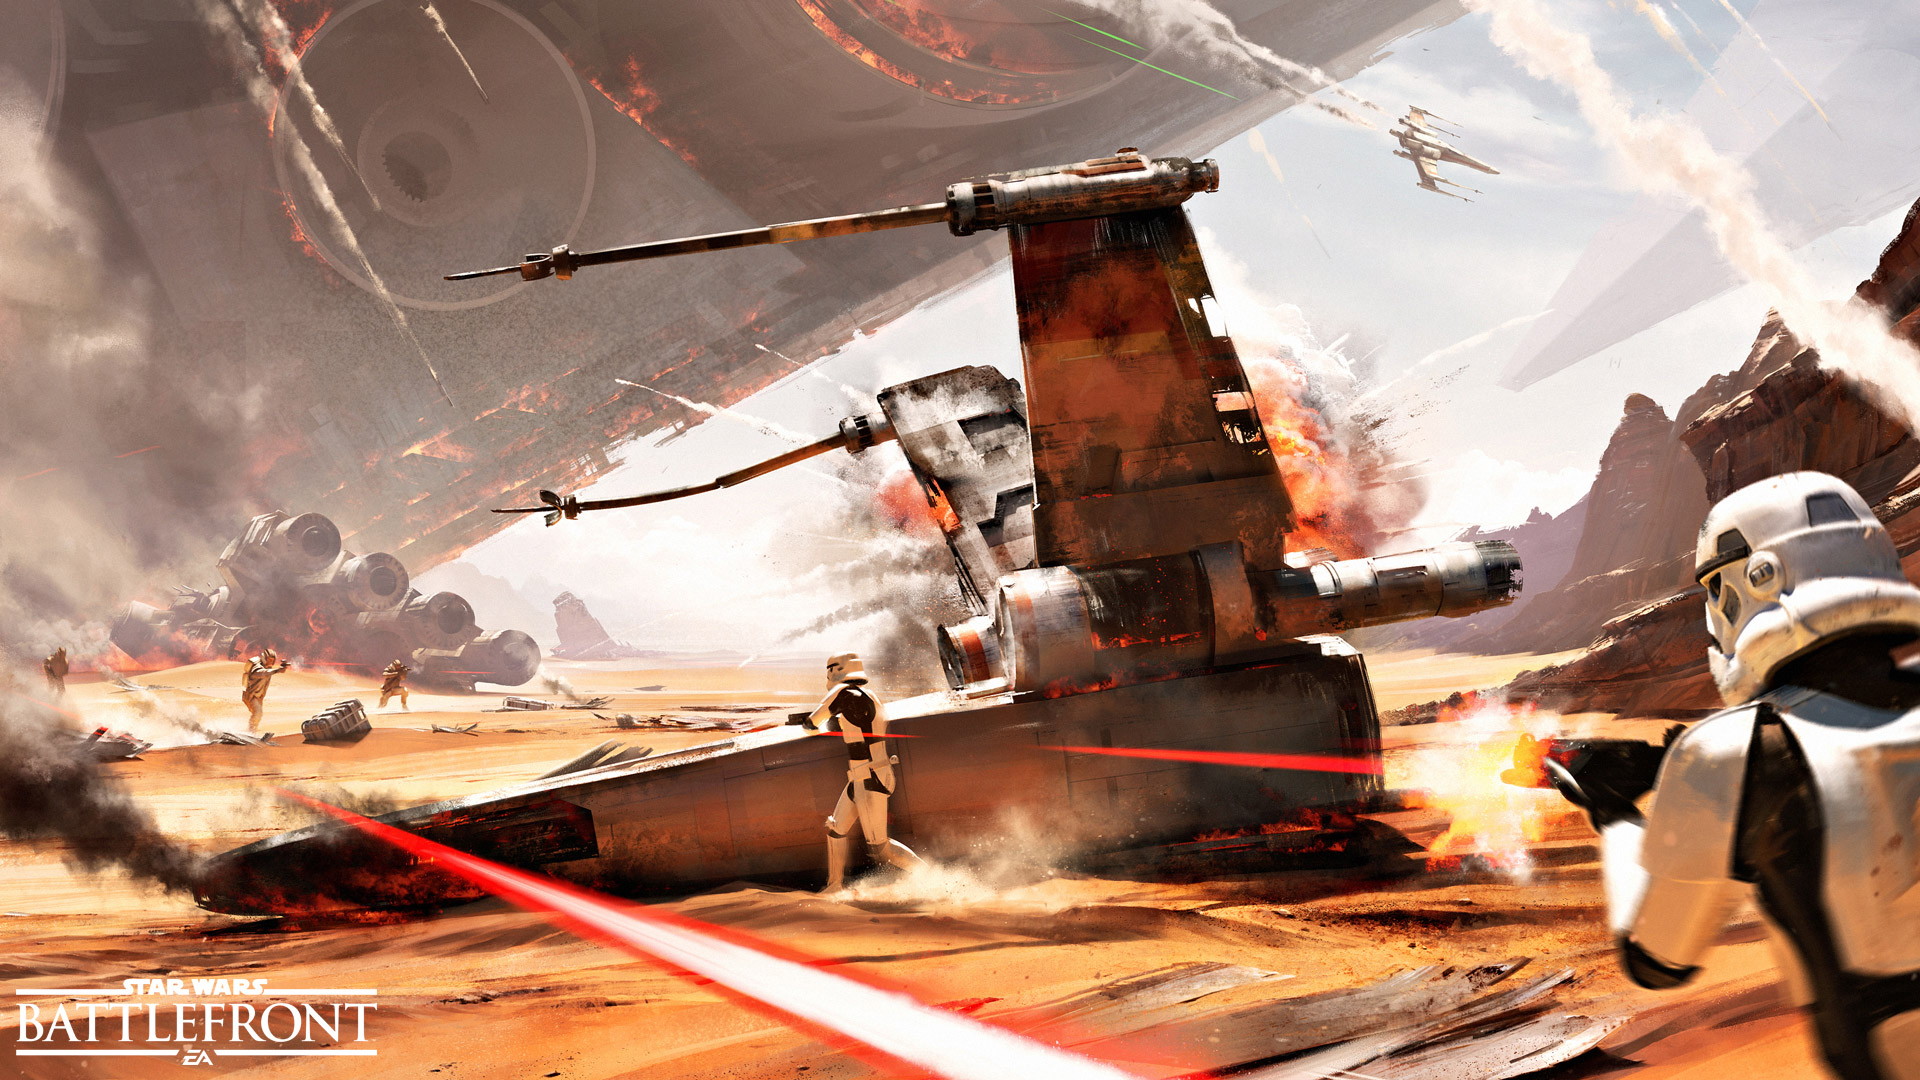 Star Wars Battlefront: Battle of Jakku - screenshot 1